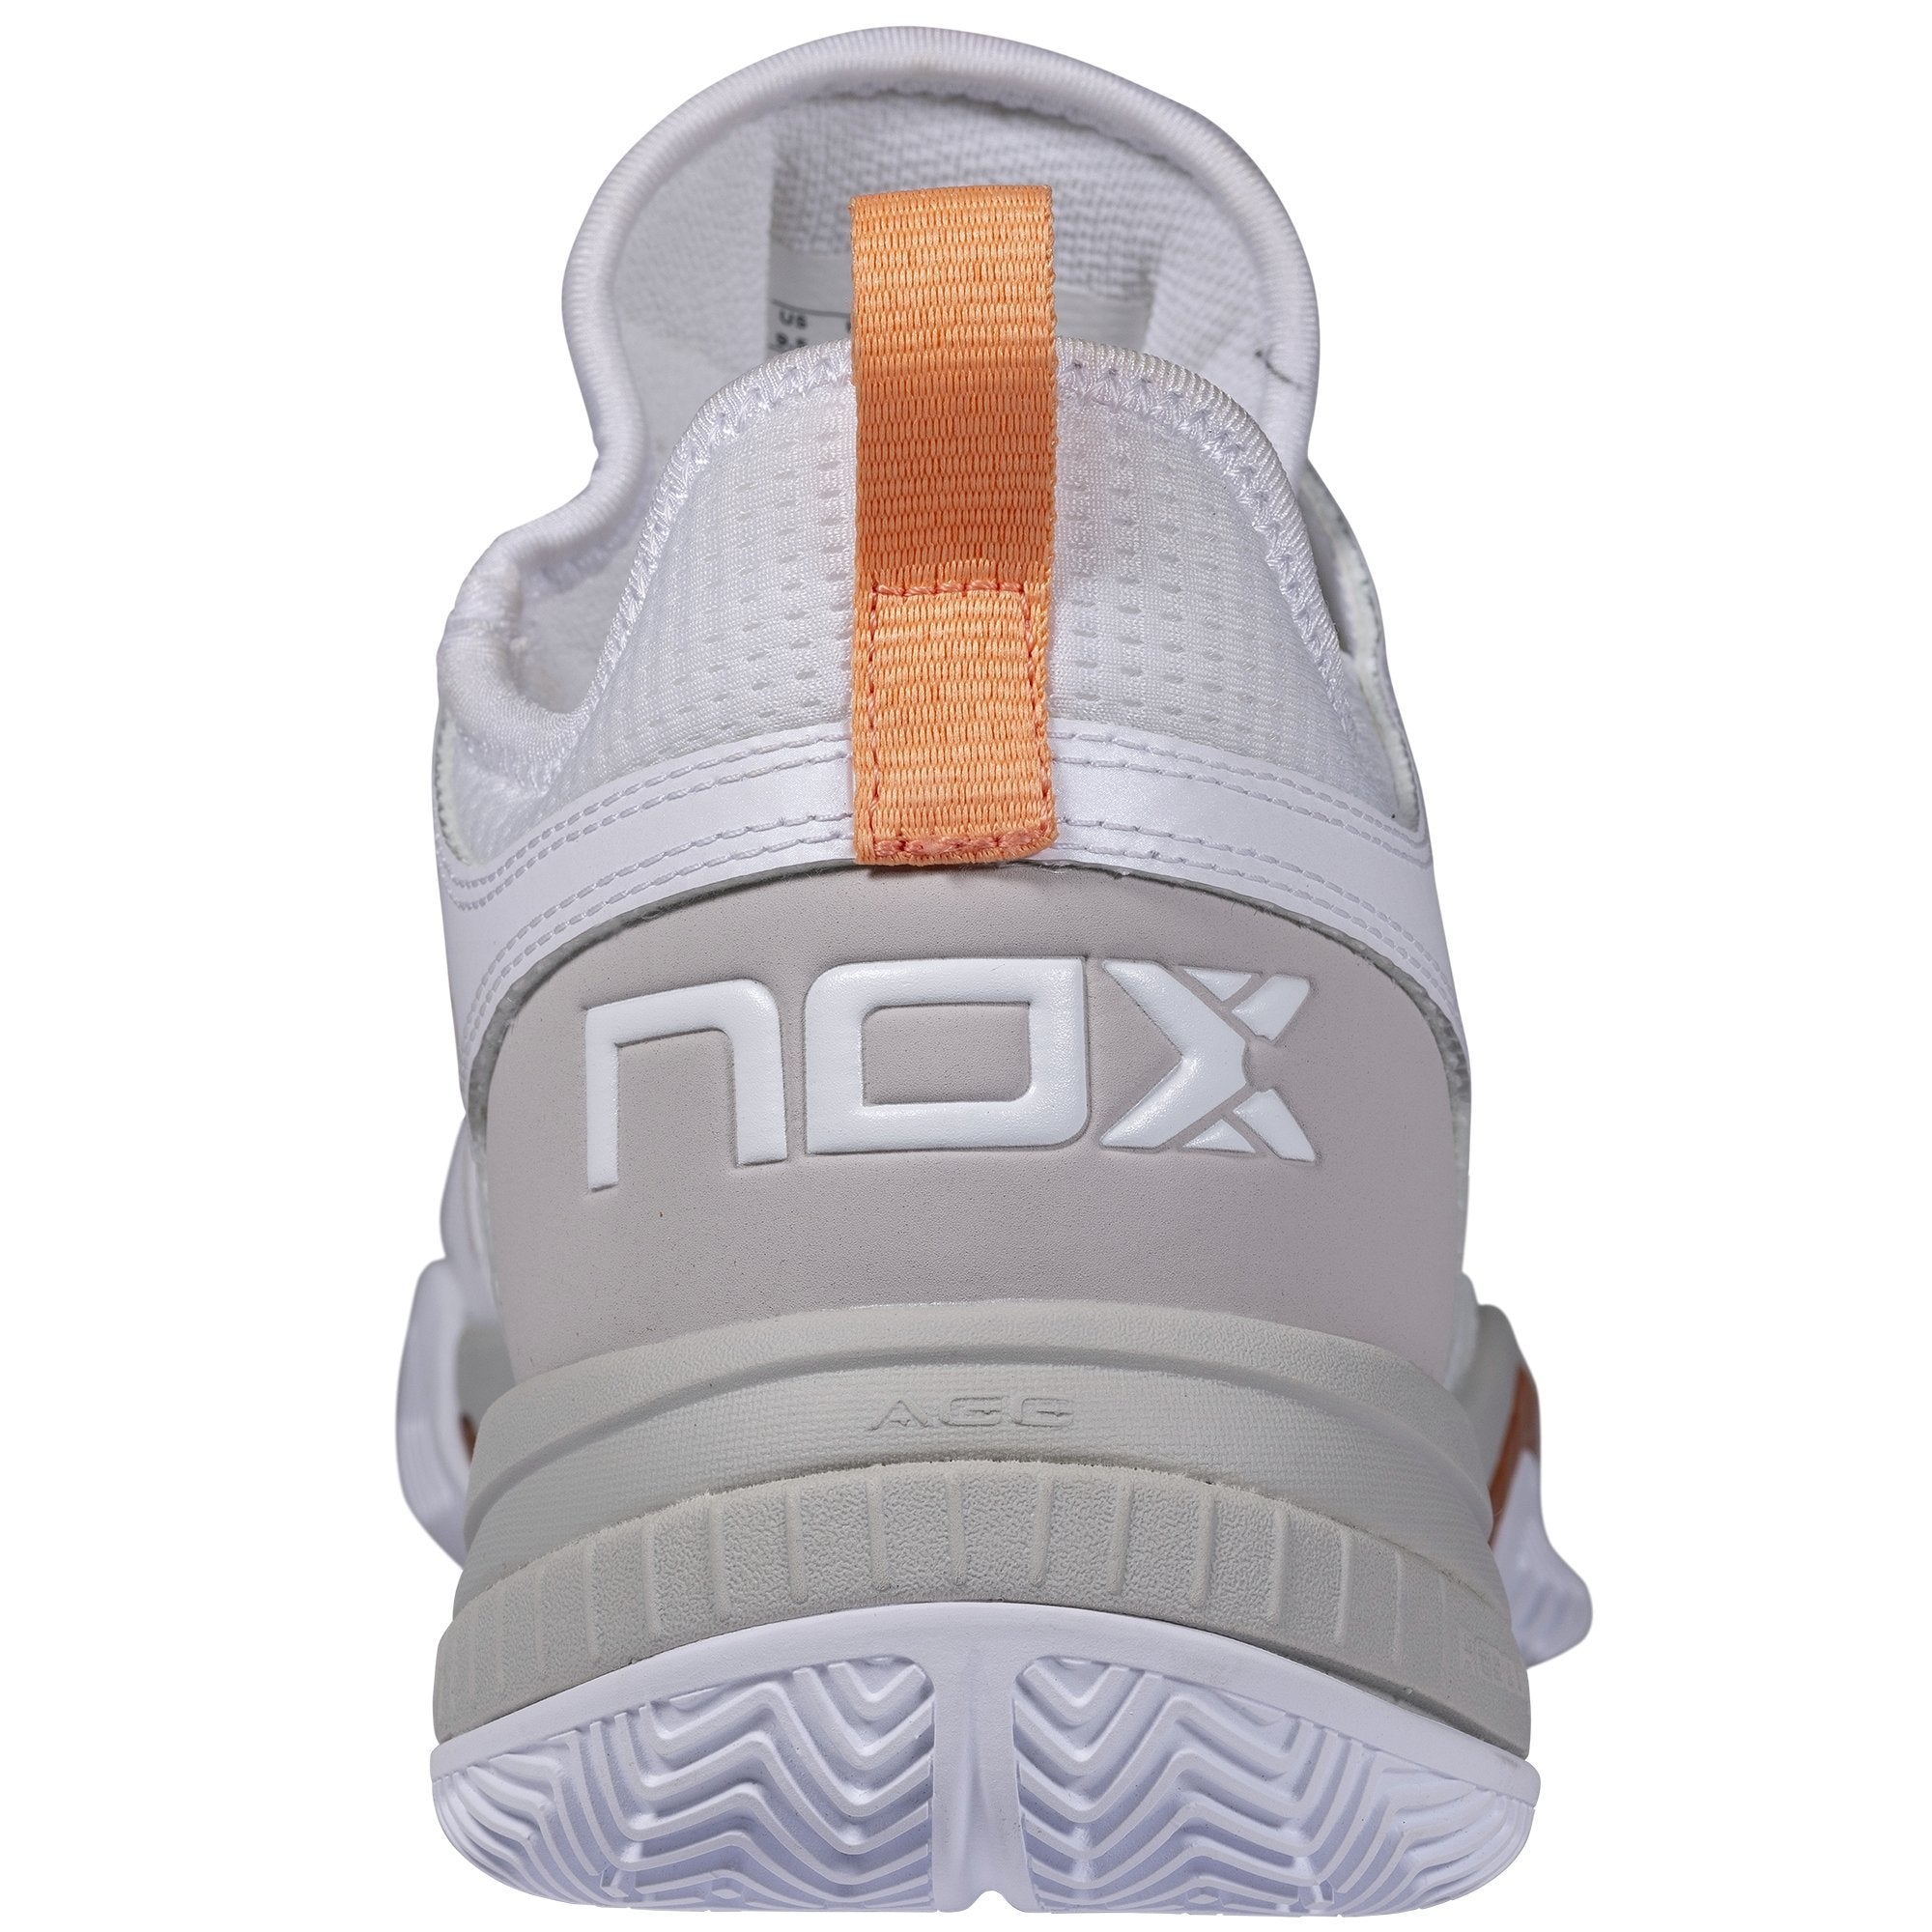 Zapatillas de Pádel Nox NERBO Blanco/Coral - NOX